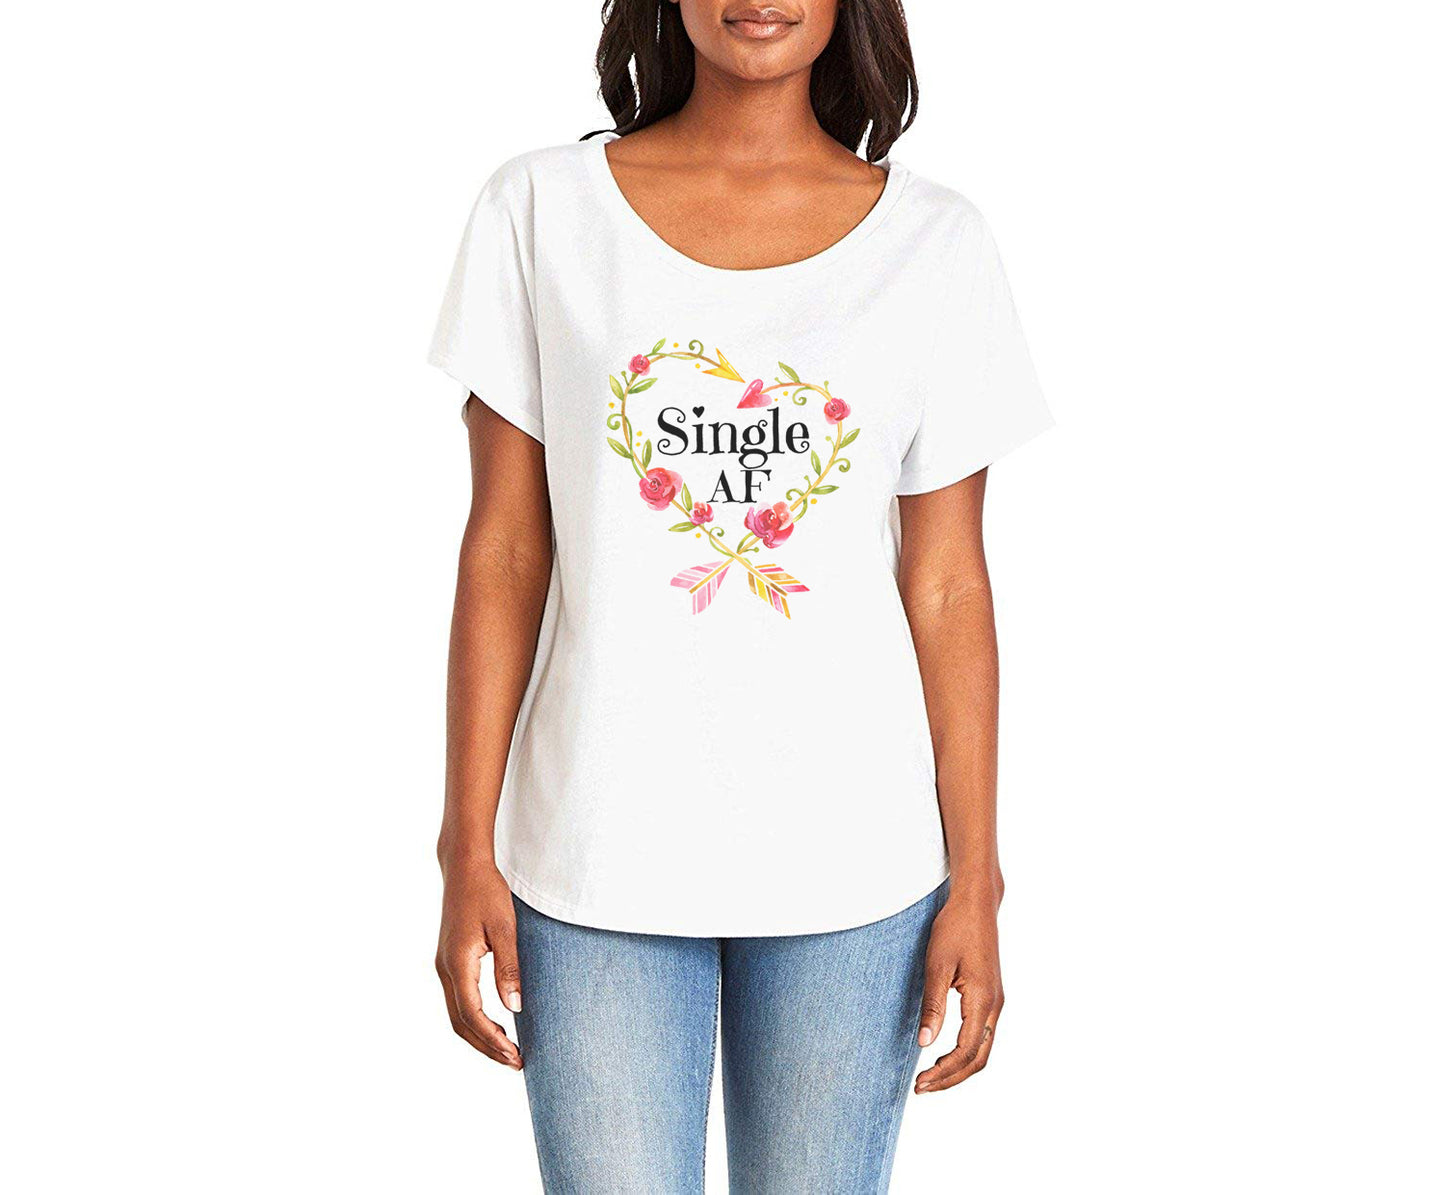 Single AF Ladies Tee Shirt - In Grey & White